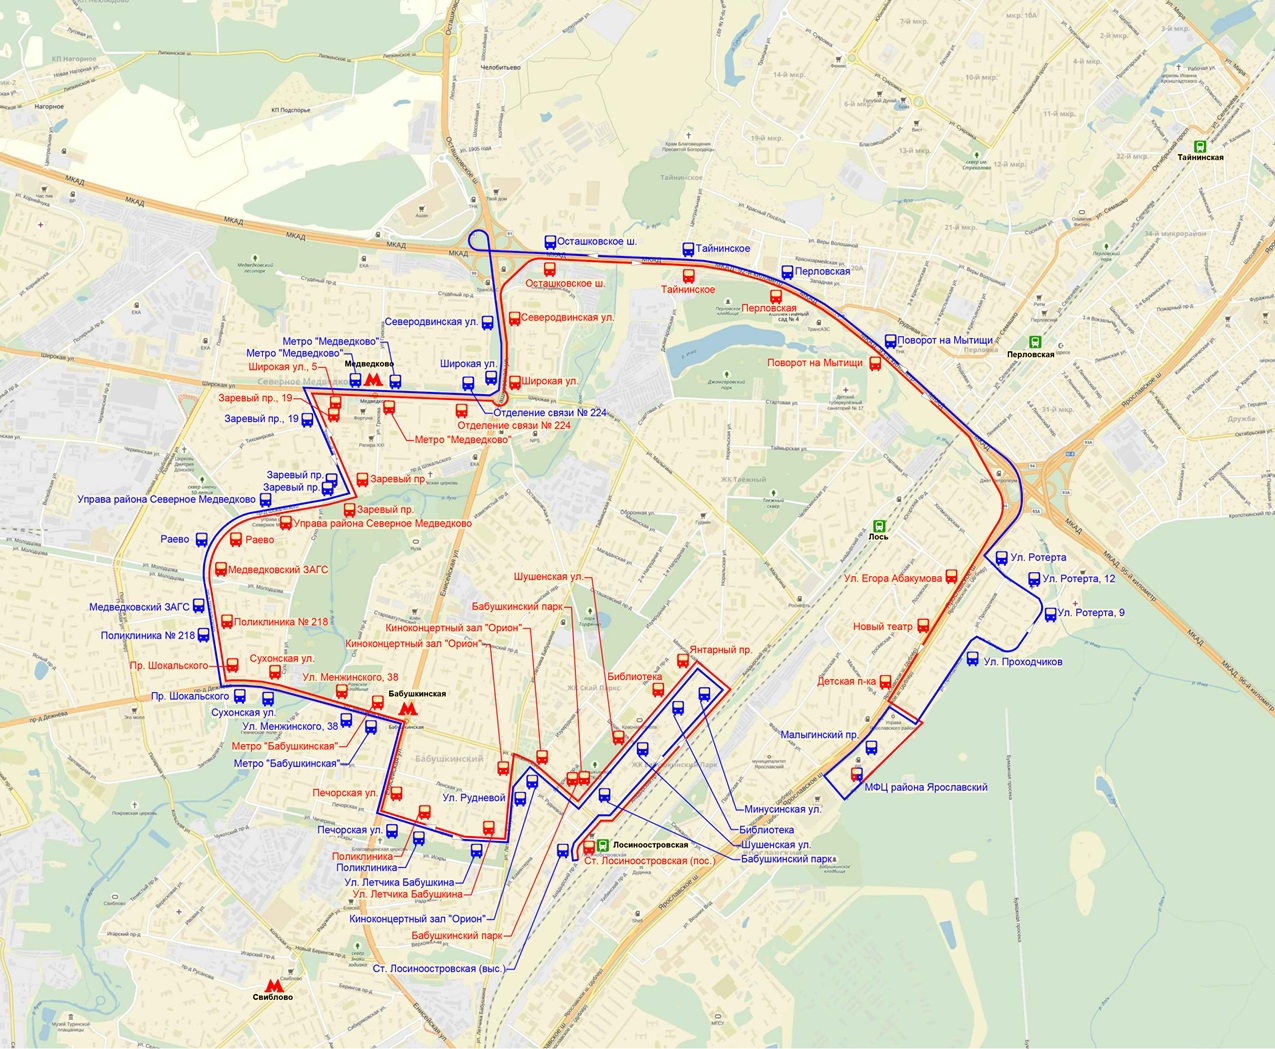 Карта движения автобусов в москве. Маршрут автобуса с15 в Москве автобус. Маршрут 15 автобуса. Маршрут автобуса с15 в Москве с остановками СВАО. Схема маршрута автобуса 15 и Москва.